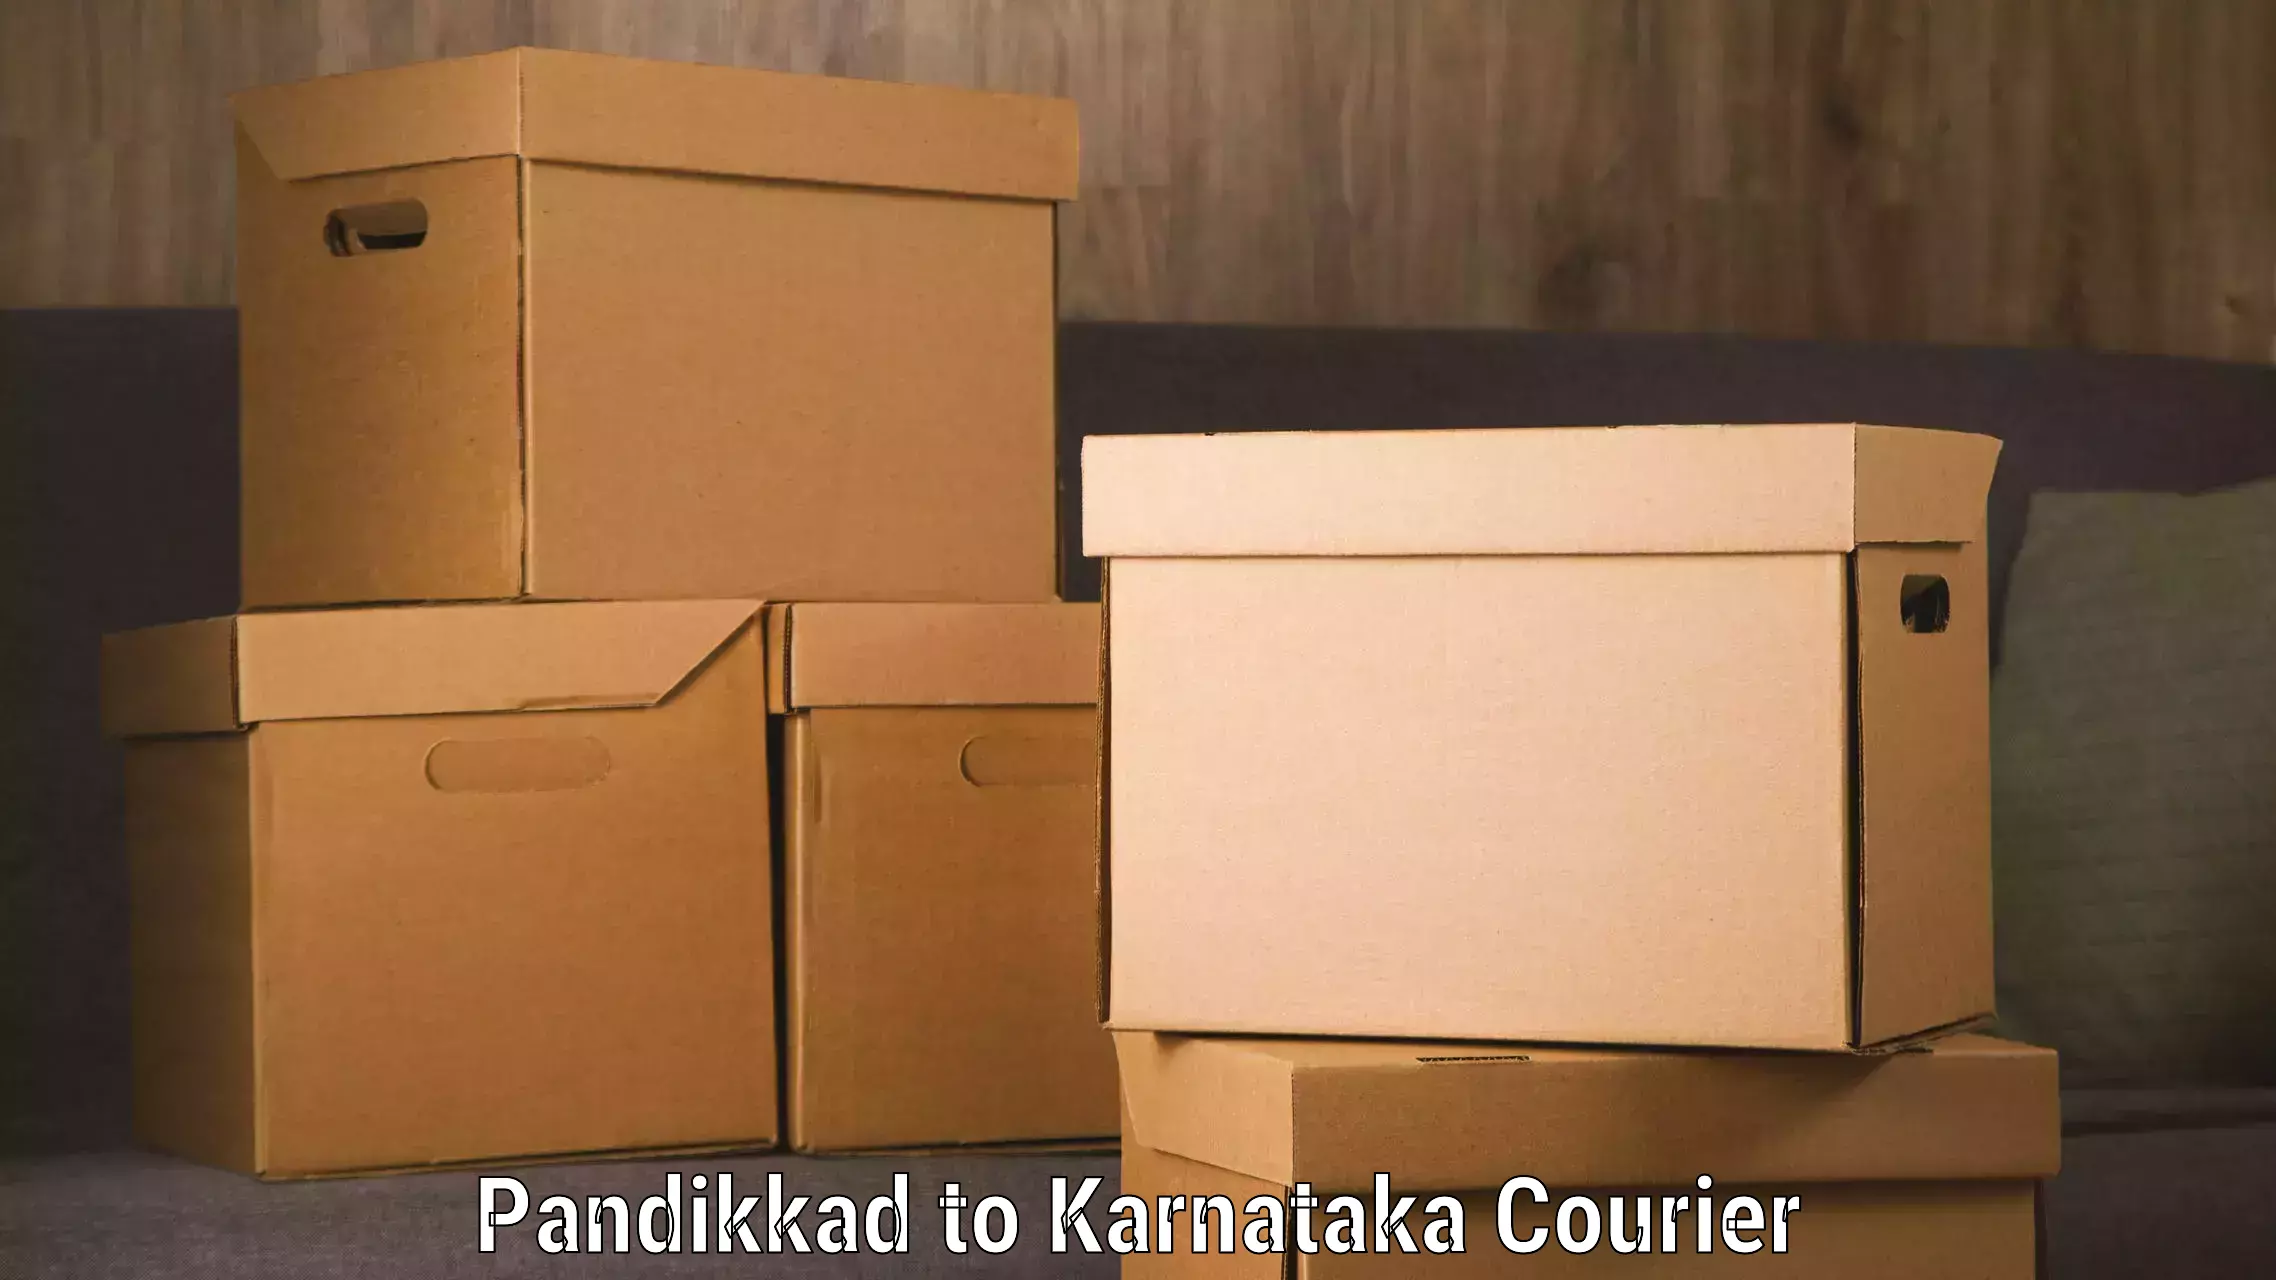 Flexible delivery schedules in Pandikkad to Davangere